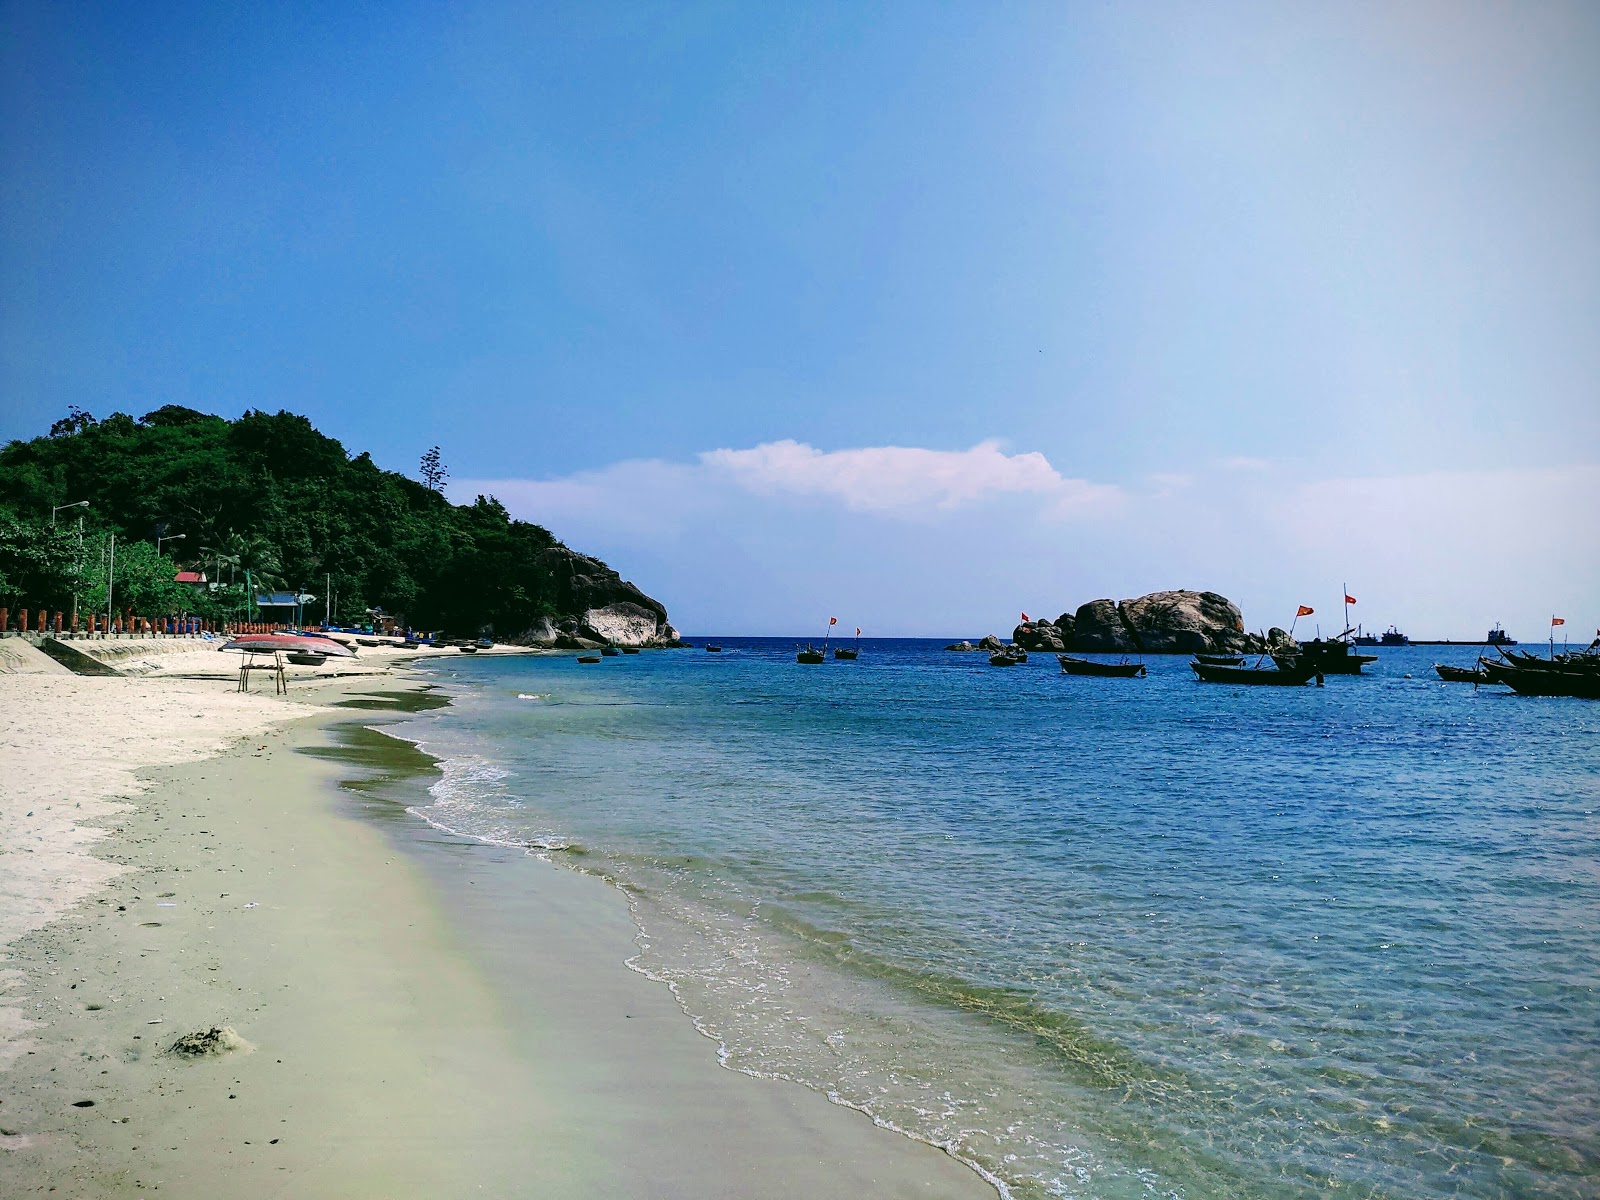 Zdjęcie Cu Lao Cham Beach - popularne miejsce wśród znawców relaksu